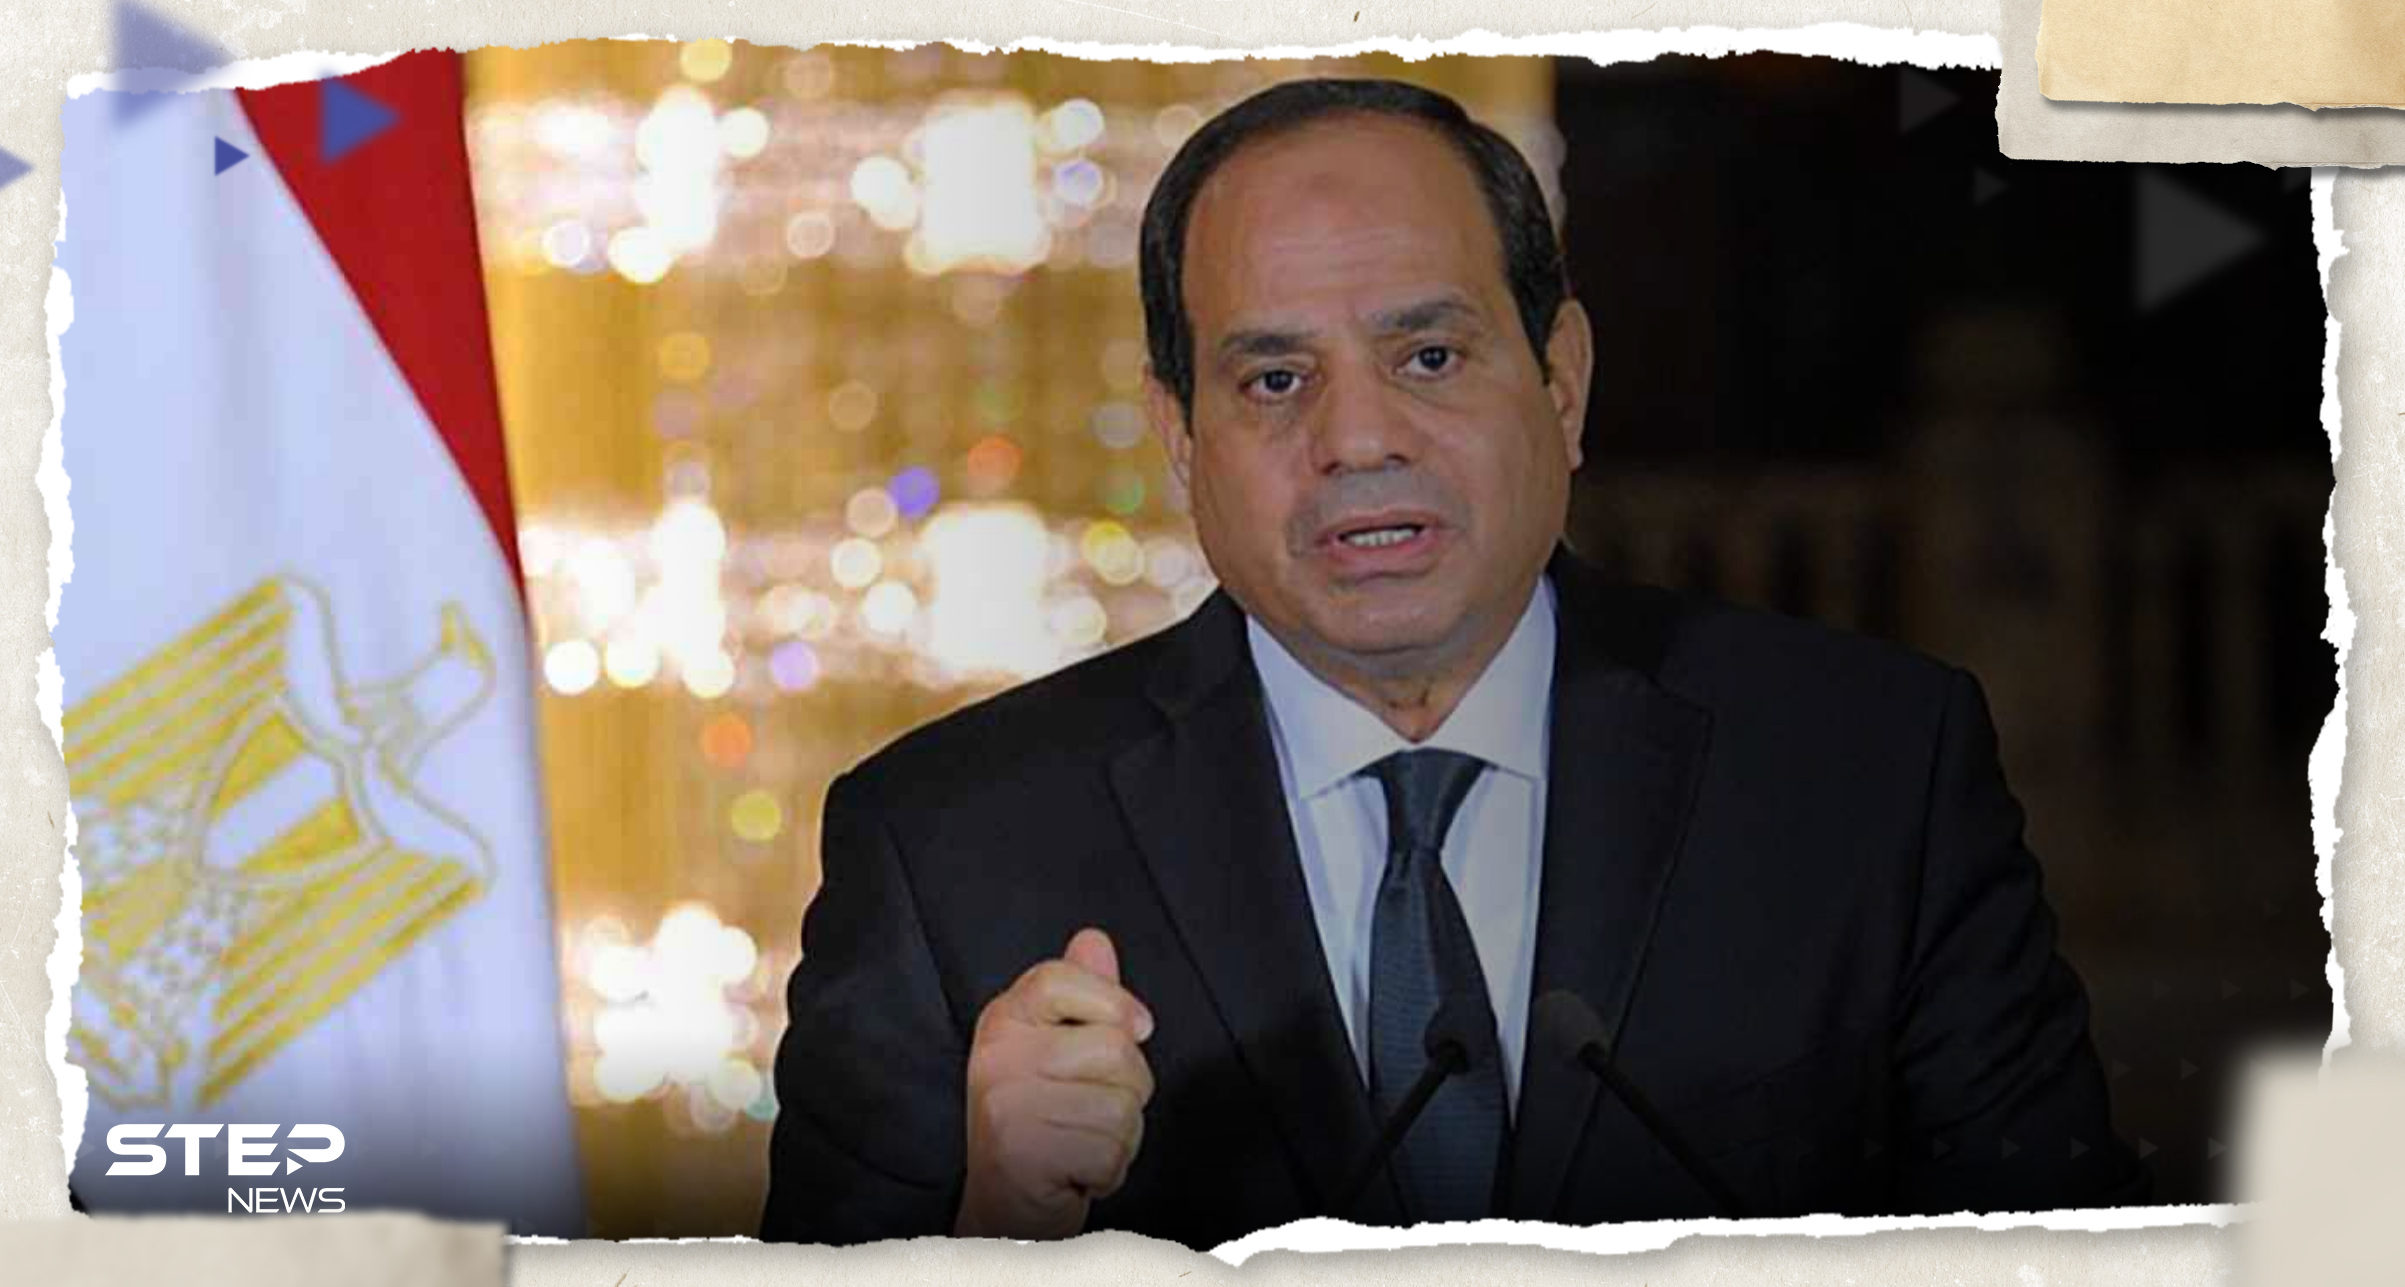 الرئيس المصري يتحدث عن أمر في "غاية الخطورة" والحل الوحيد للقضية الفلسطينية 